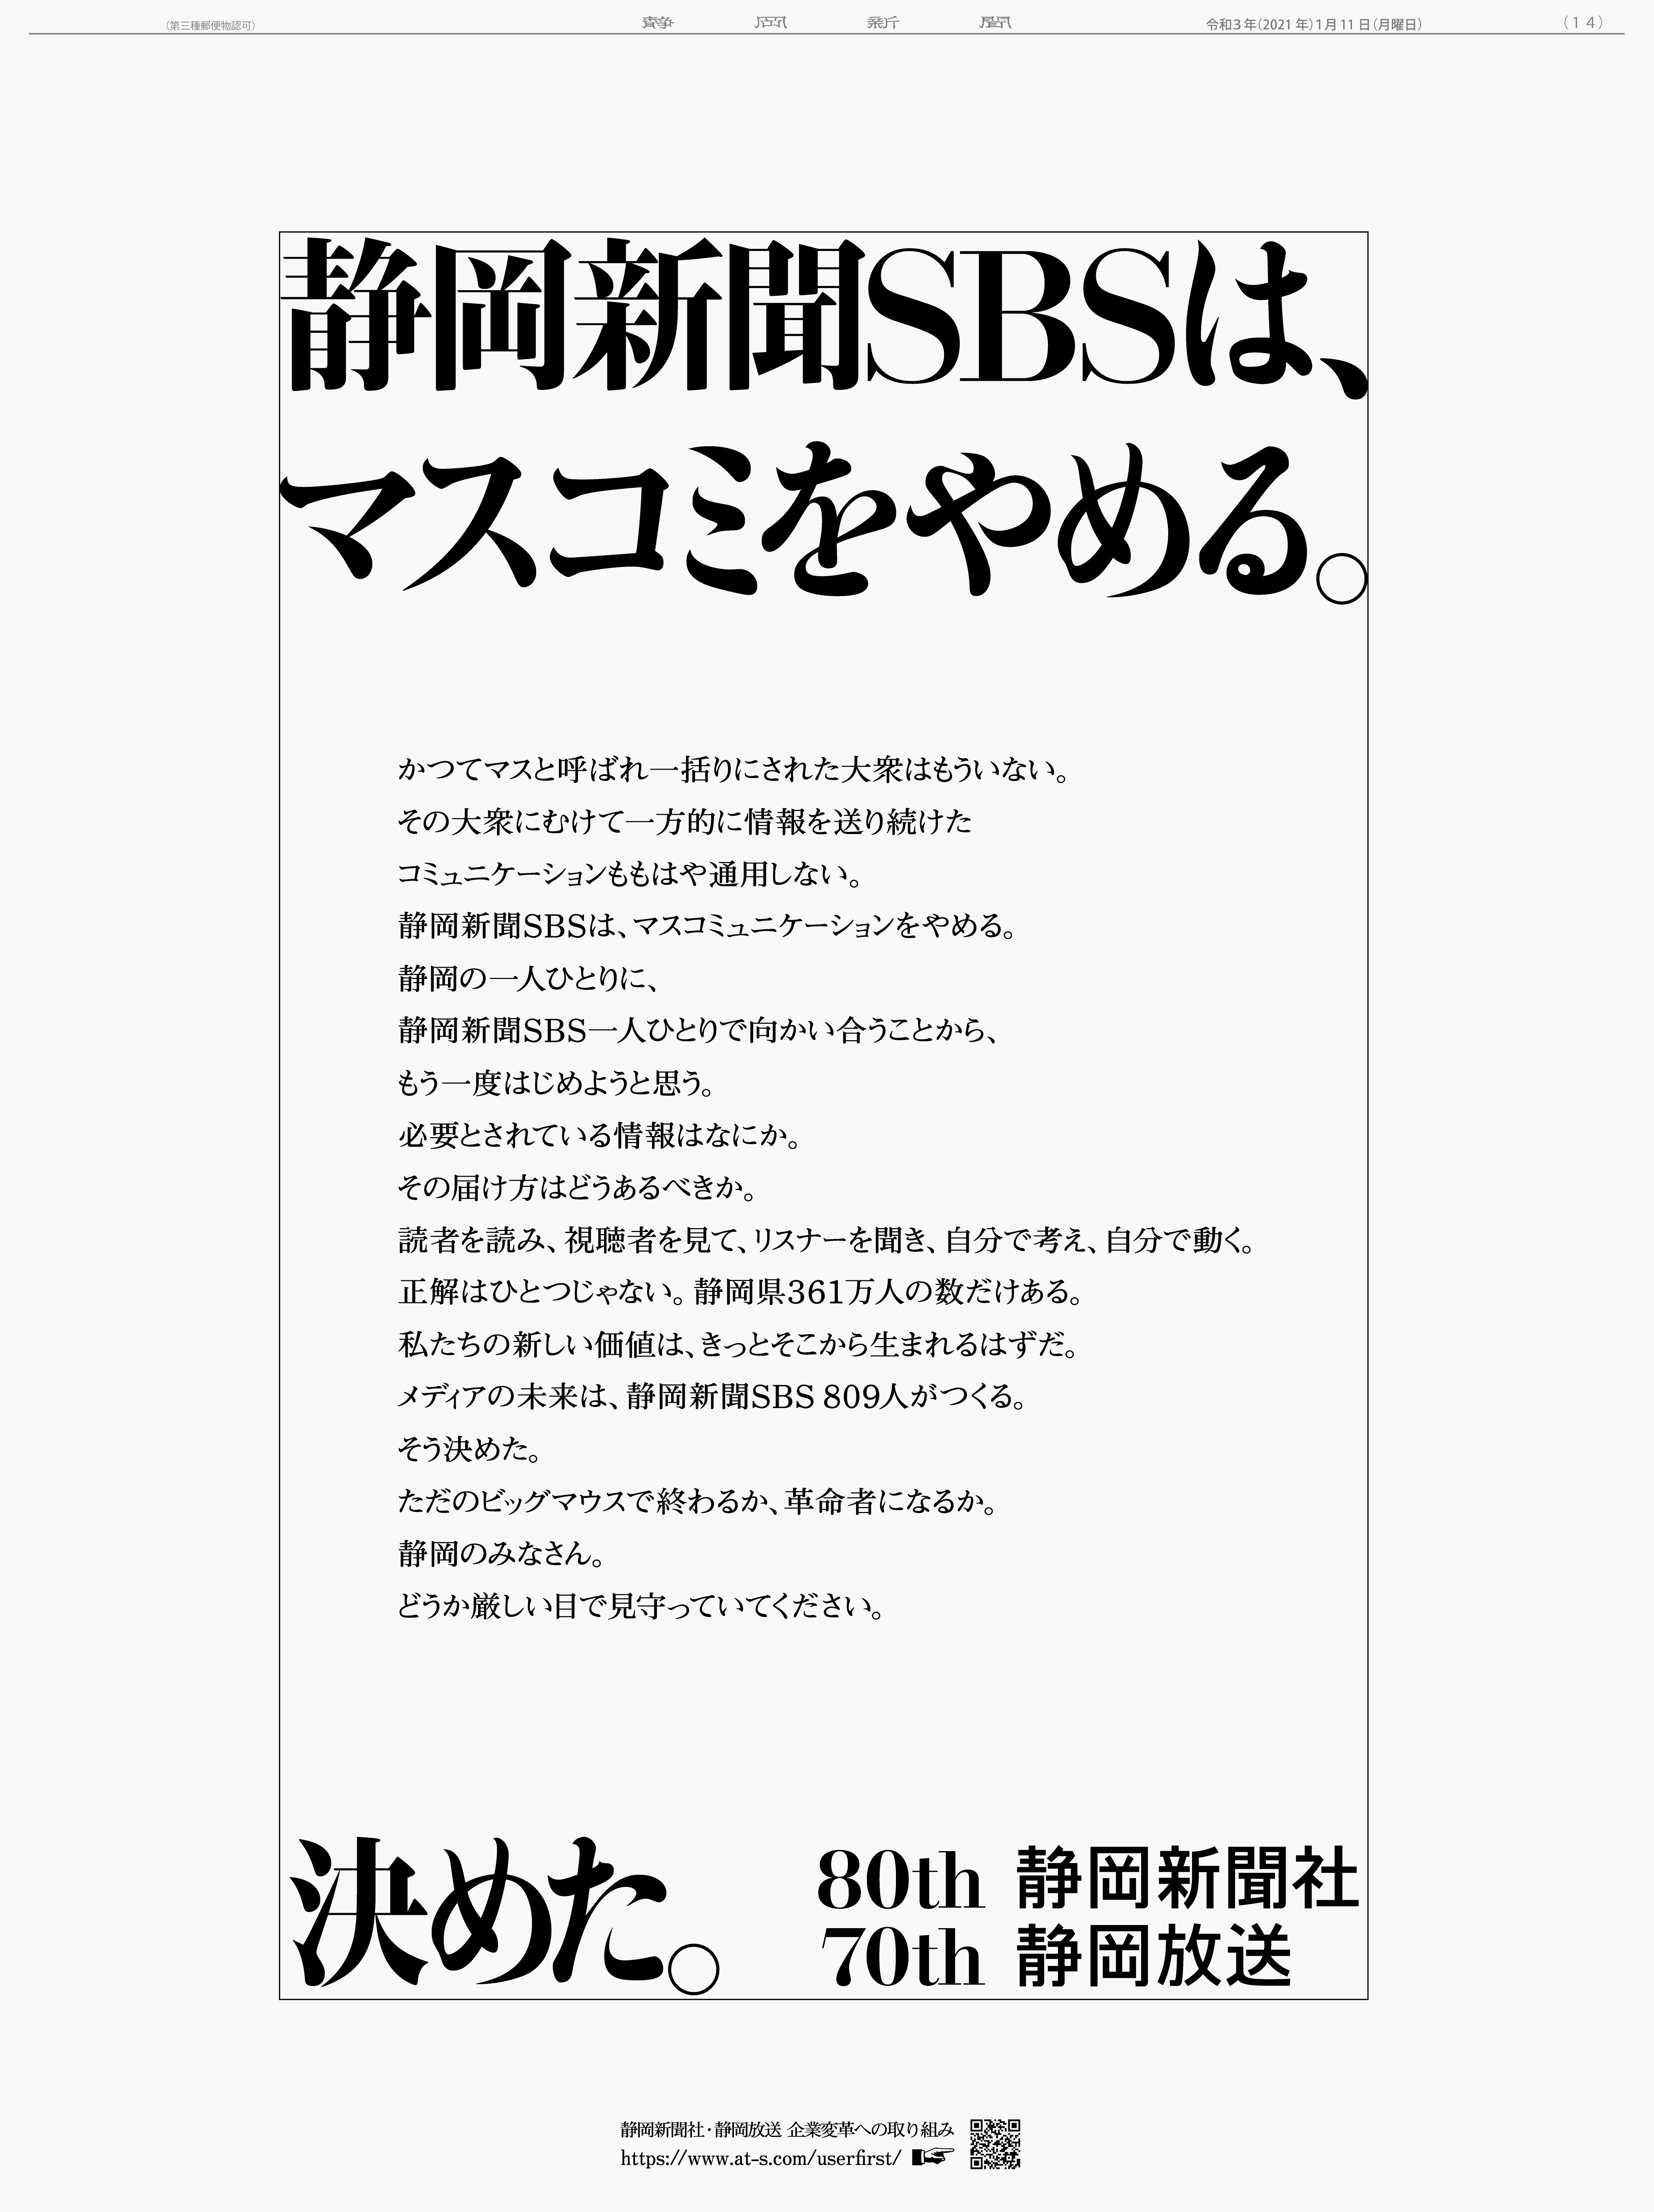 静岡新聞SBSが1月11日に出稿した新聞広告「静岡新聞SBSはマスコミをやめる。」。こちらは14面に掲載されたもの。